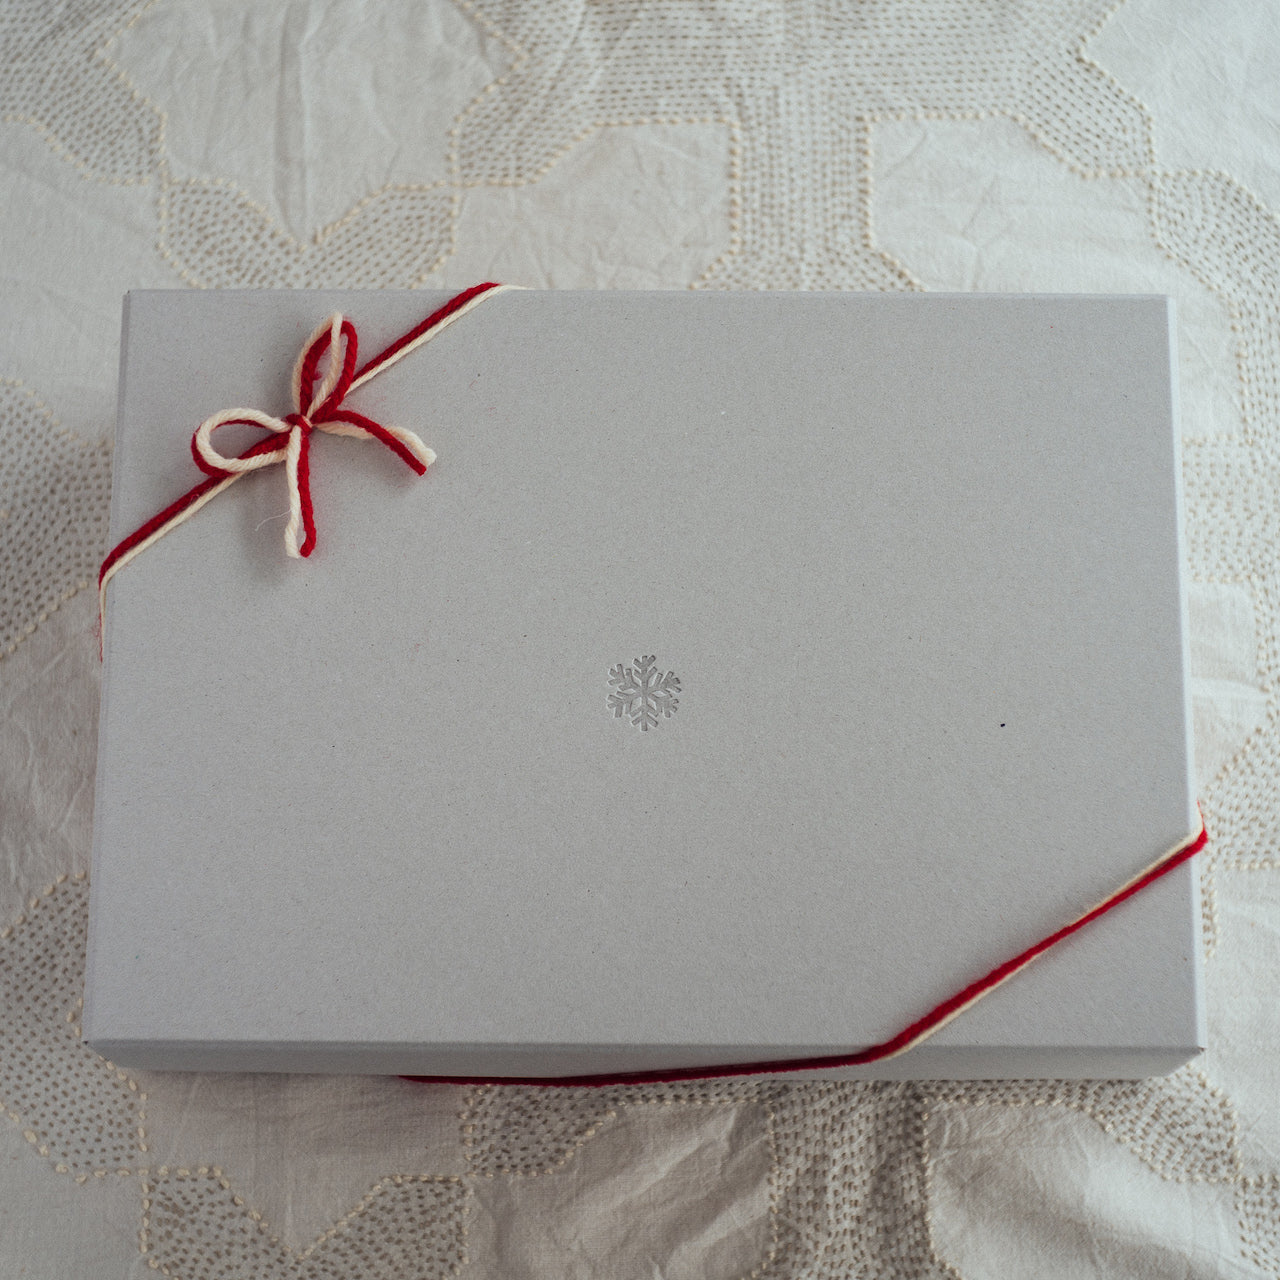 【Gift Box】マリールゥのパンケーキミックス3個アソート